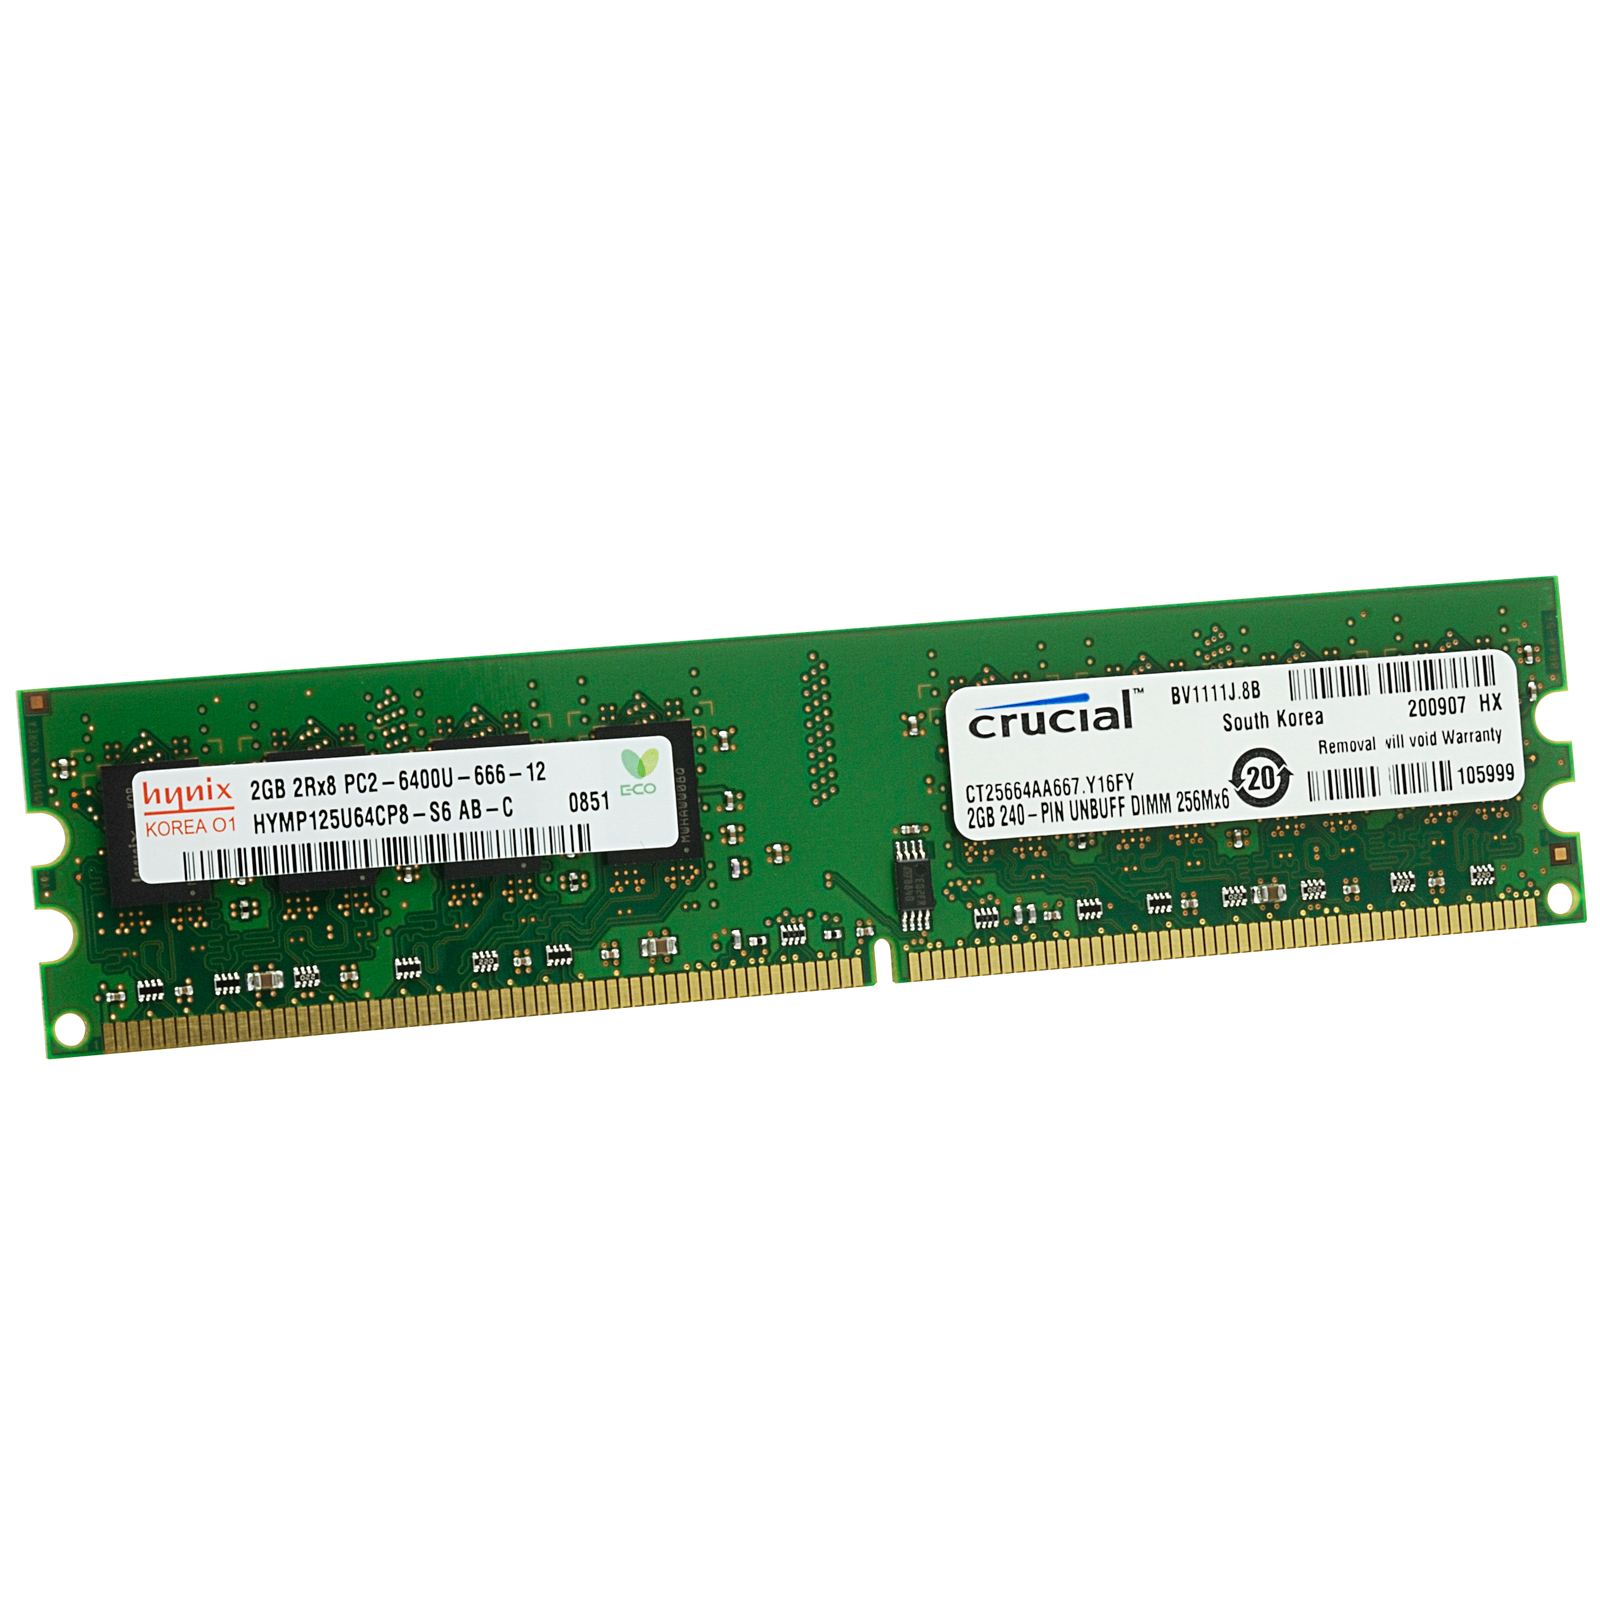 OFFTEK 2GB Replacement RAM Memory for Maxdata Platinum 100 I DDR2-6400 - ECC Server Memory/Workstation Memory